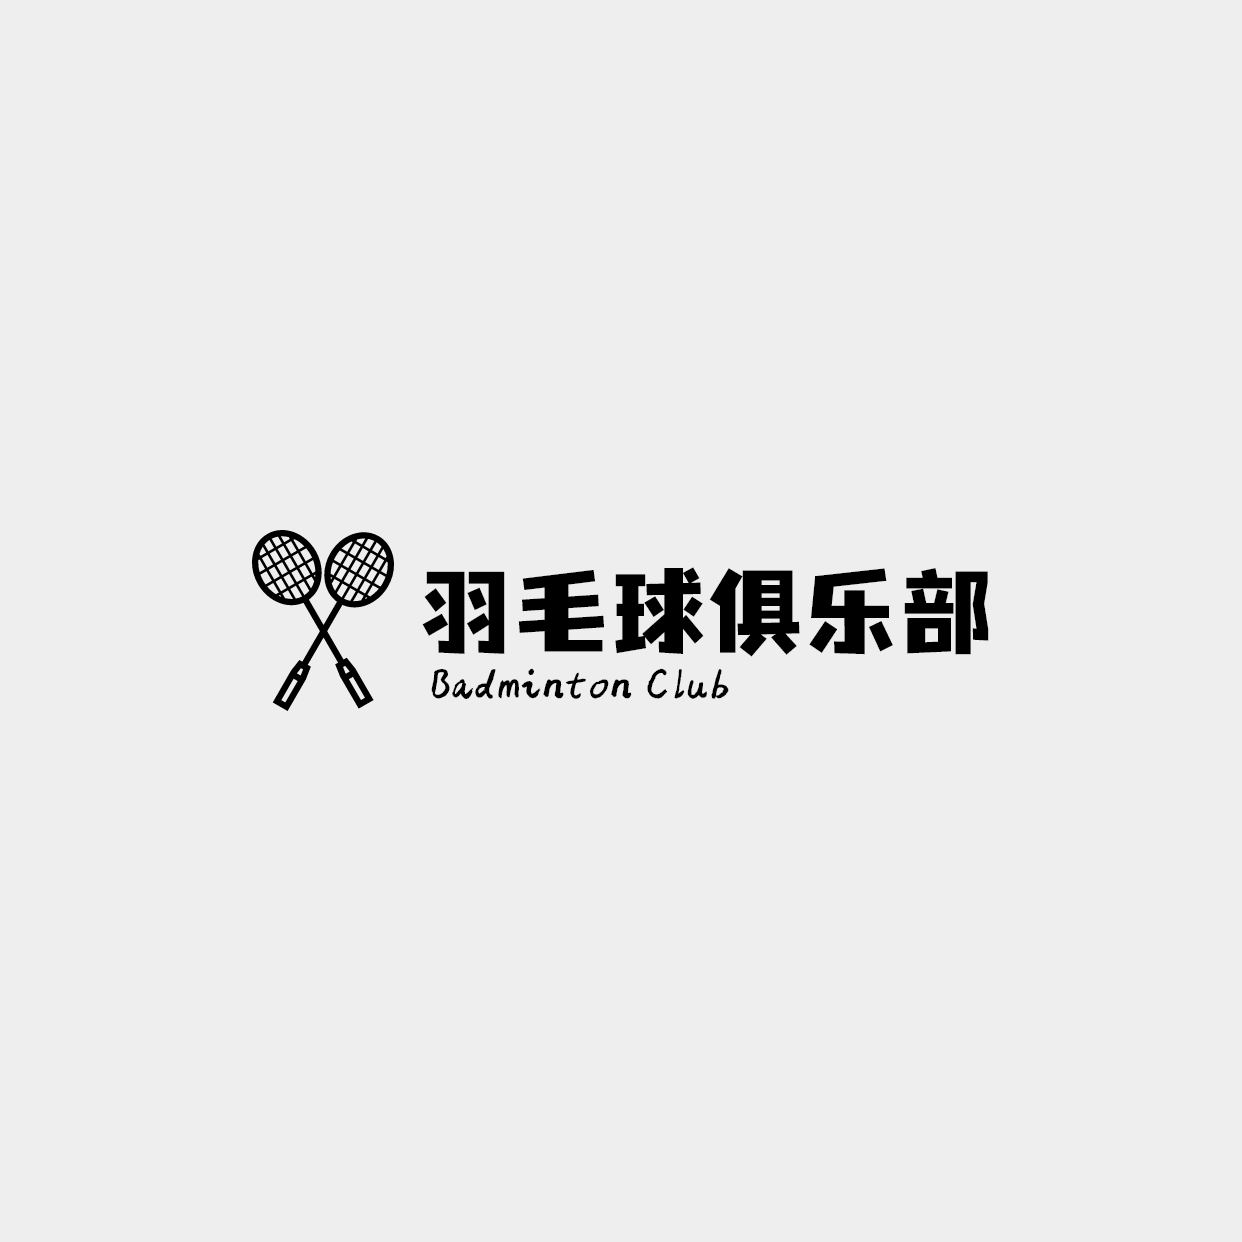 羽毛球运动馆logo预览效果